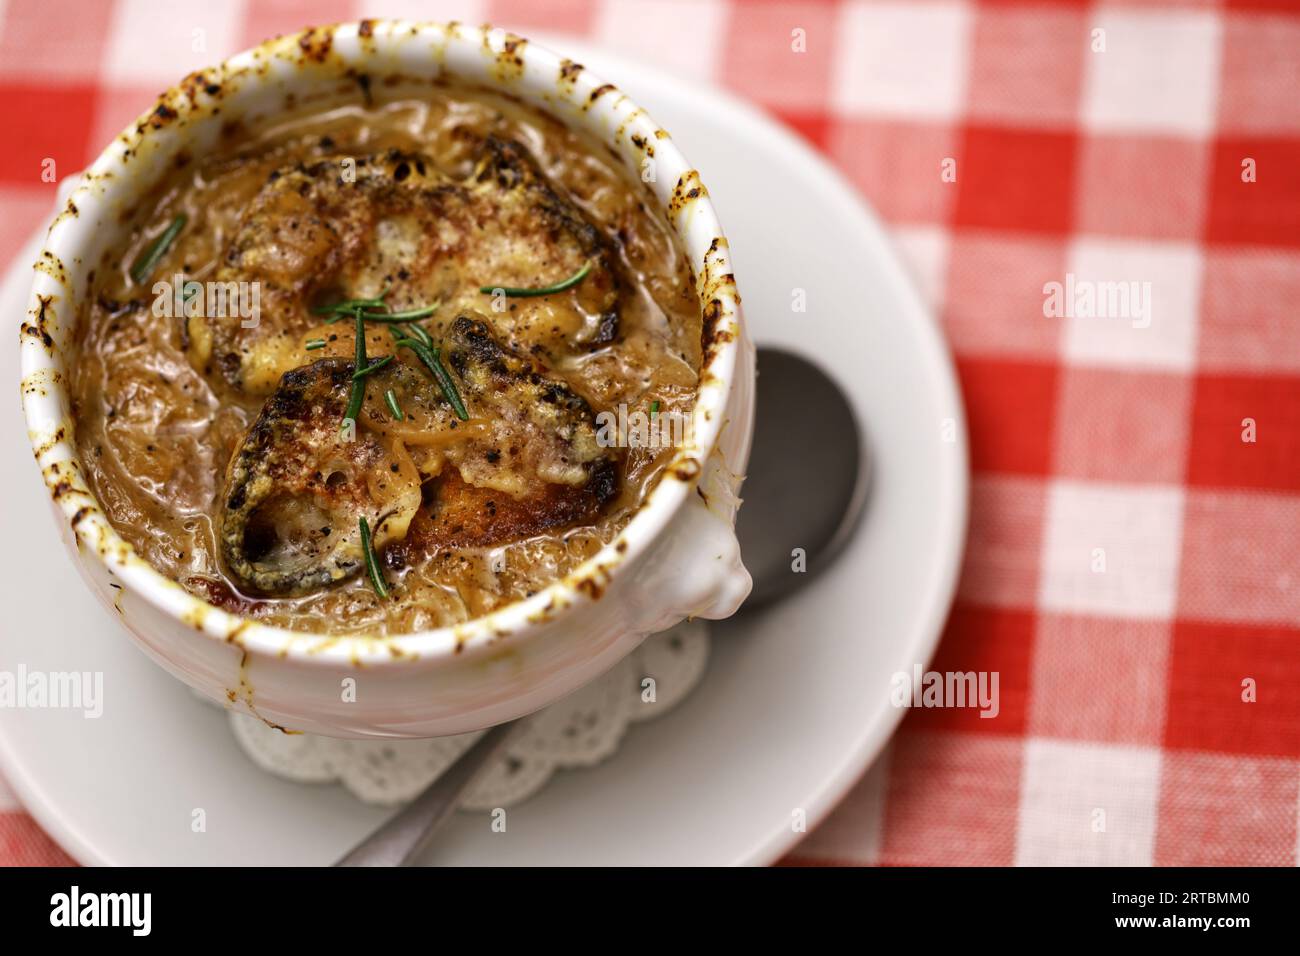 French Onion Soup (Soupe à l'Oignon Gratinée) Stock Photo